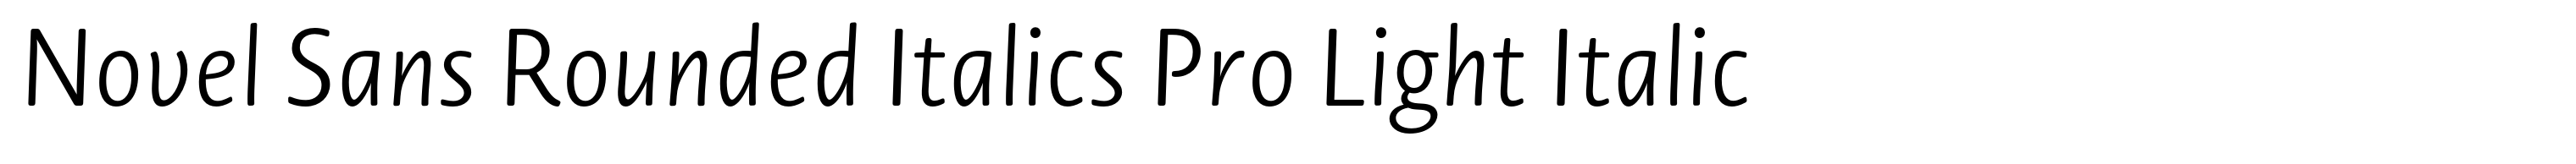 Novel Sans Rounded Italics Pro Light Italic